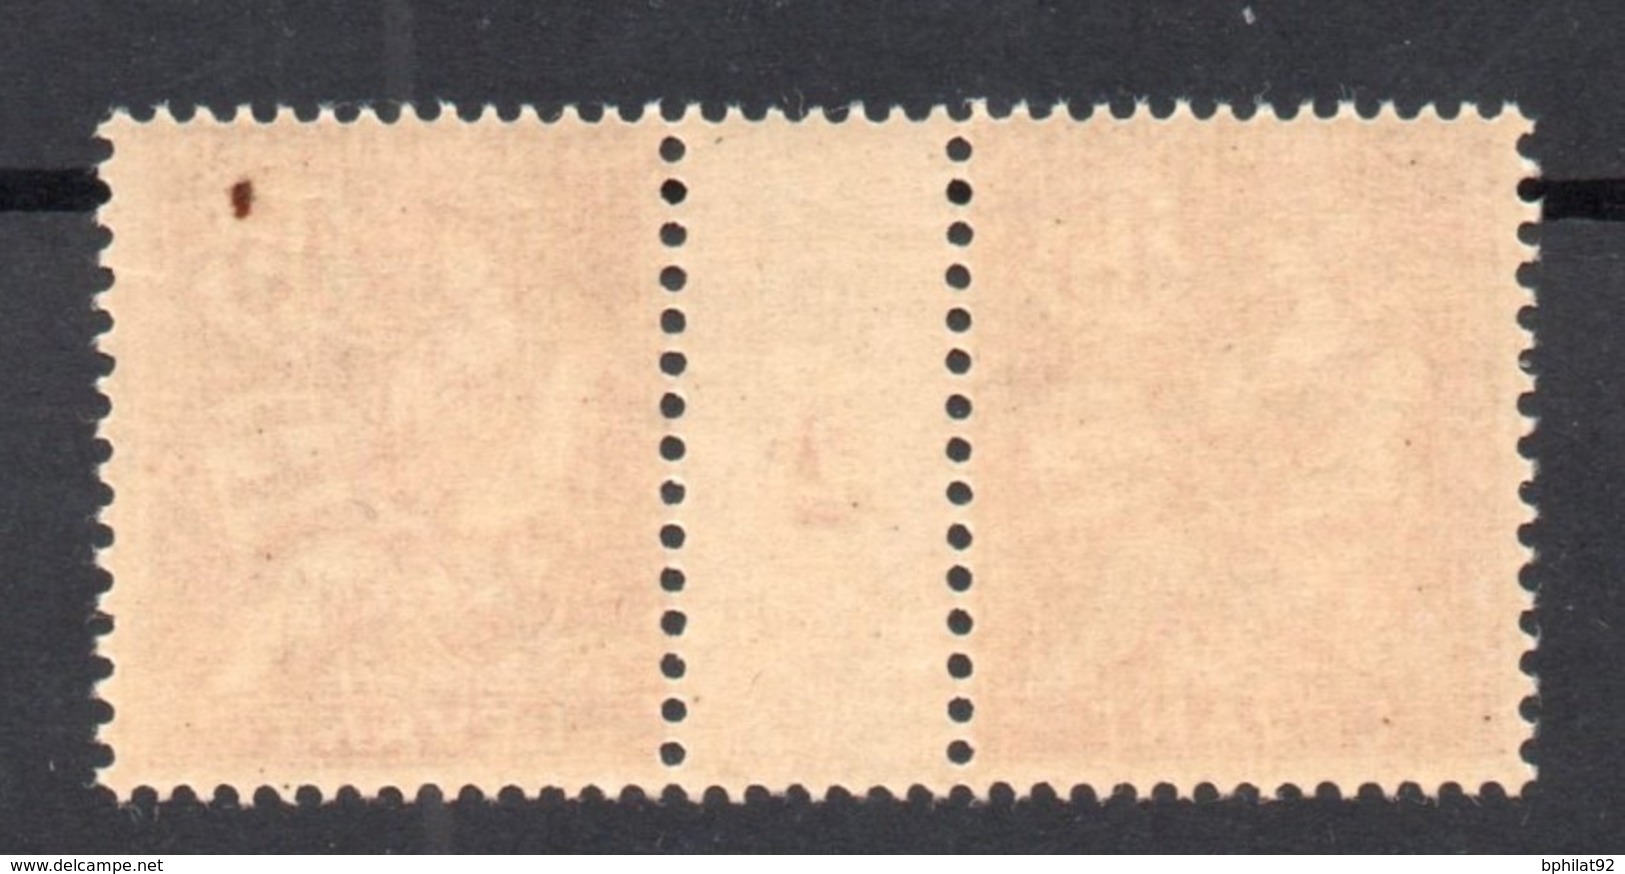 !!! PRIX FIXE : LEVANT, PAIRE DU N°15 AVEC MILLESIME 2 NEUVE ** - Unused Stamps